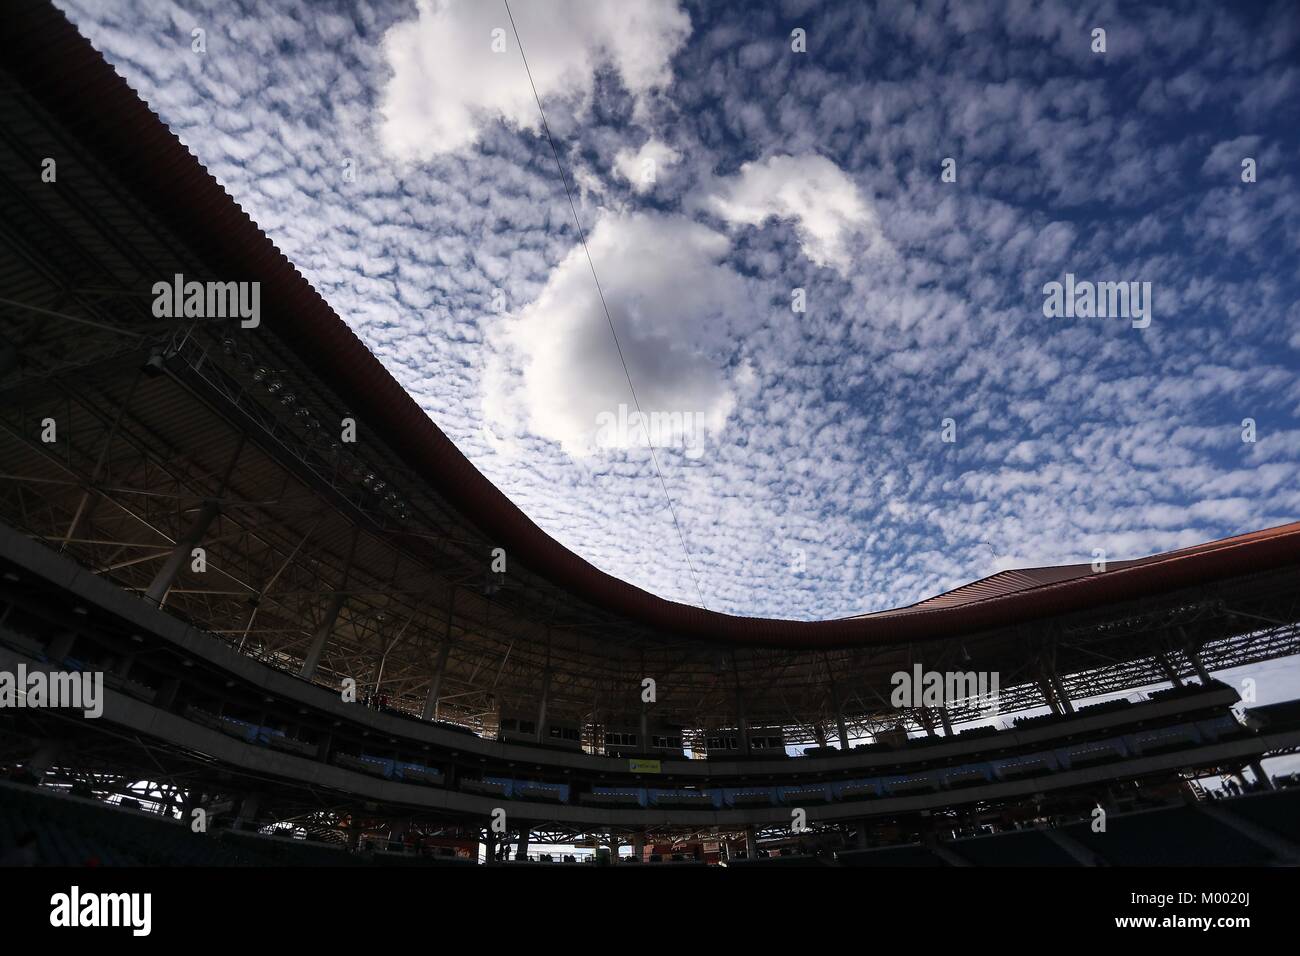 Vista de el cielo nublado en el Estadio Sonora previo al inicio del 4to. partido de beisbol entre Naranjeros vs Aguilas de Mexicali. Series semifinal Stock Photo